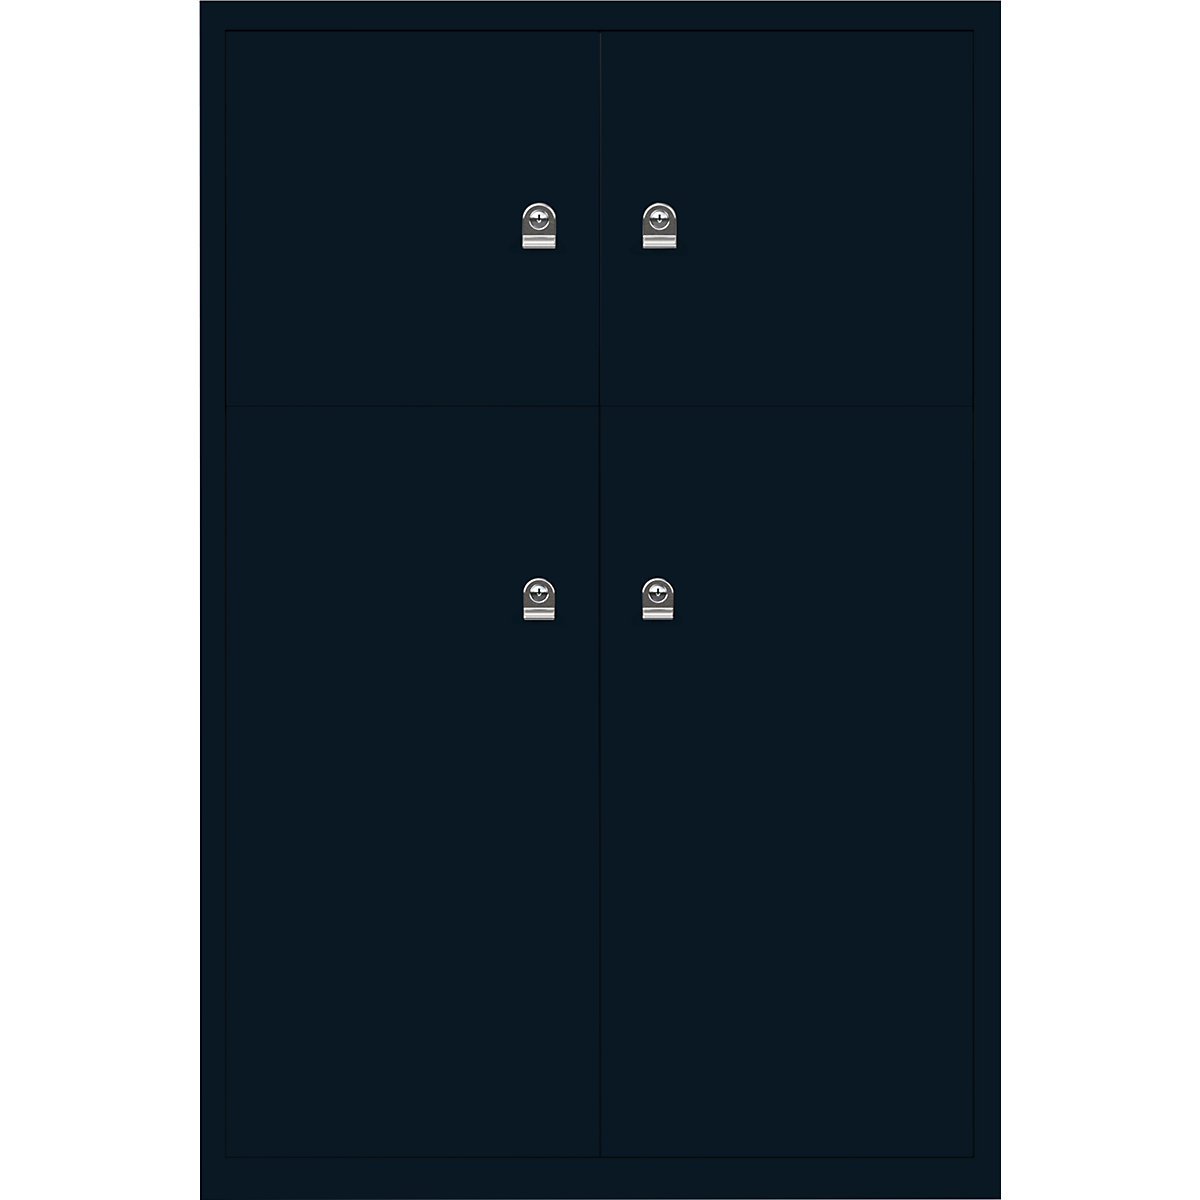 Omara s predelki z zaklepanjem LateralFile™ – BISLEY, 4 predelki z zaklepanjem, višina 2 x 375 mm, 2 x 755 mm, prusko modre barve-2